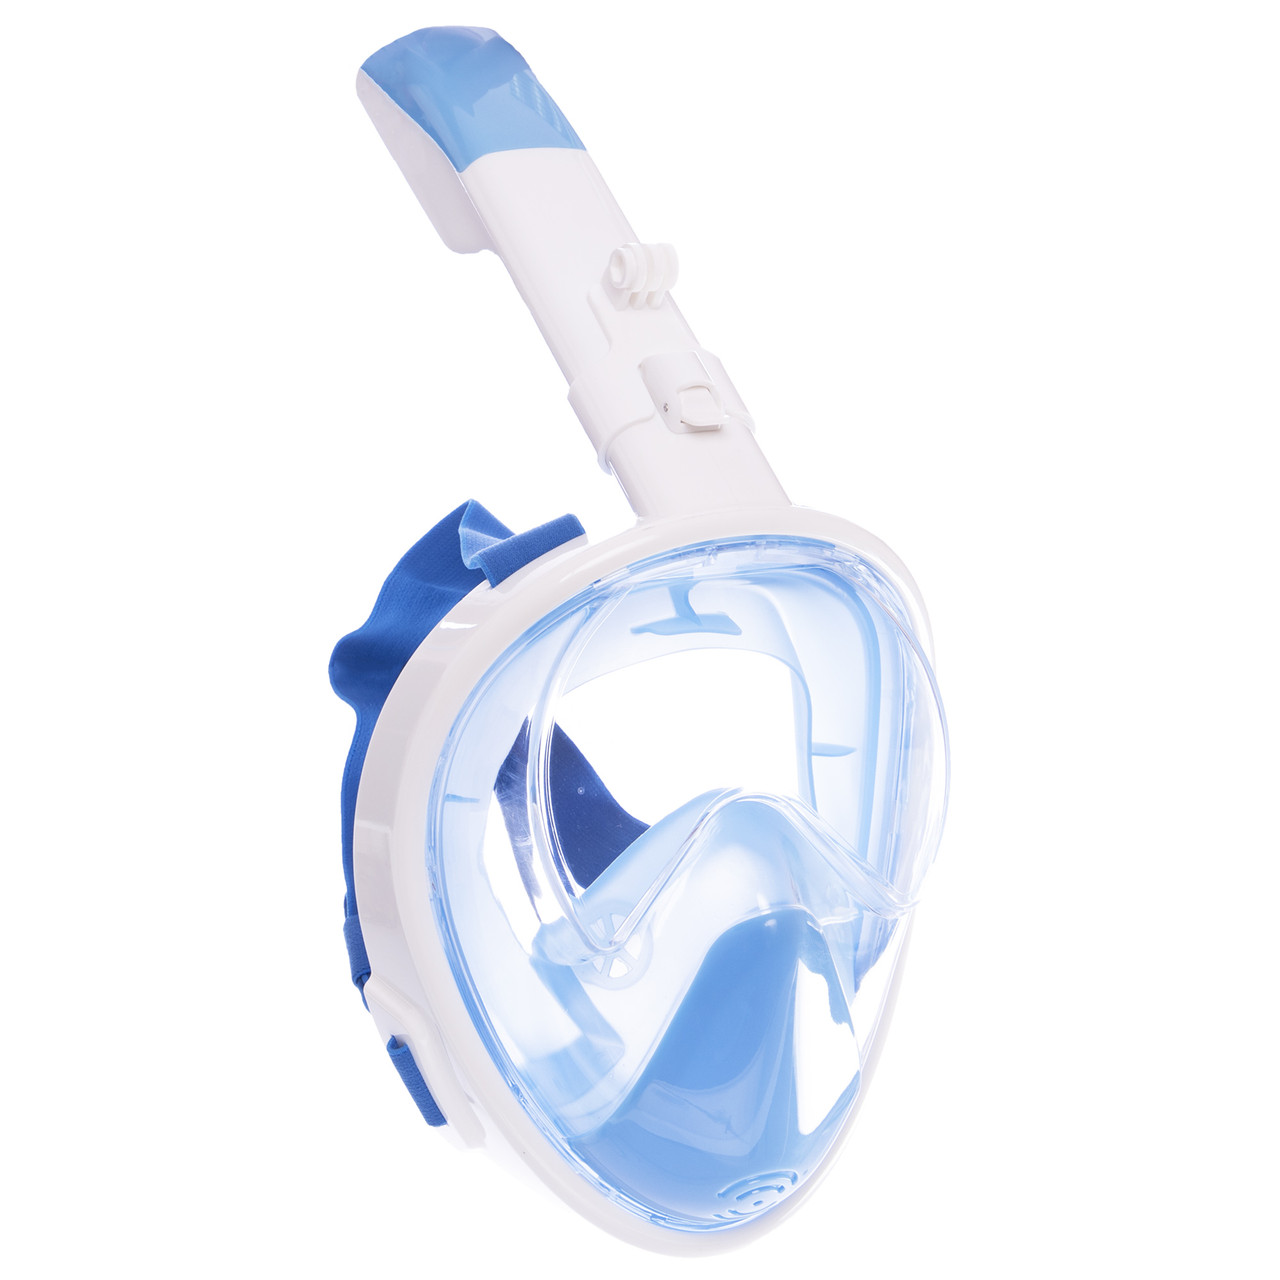 

Маска для снорклинга с дыханием через нос Swim One F-118 (силикон, пластик, р-р S-XL, цвета в ассортименте)